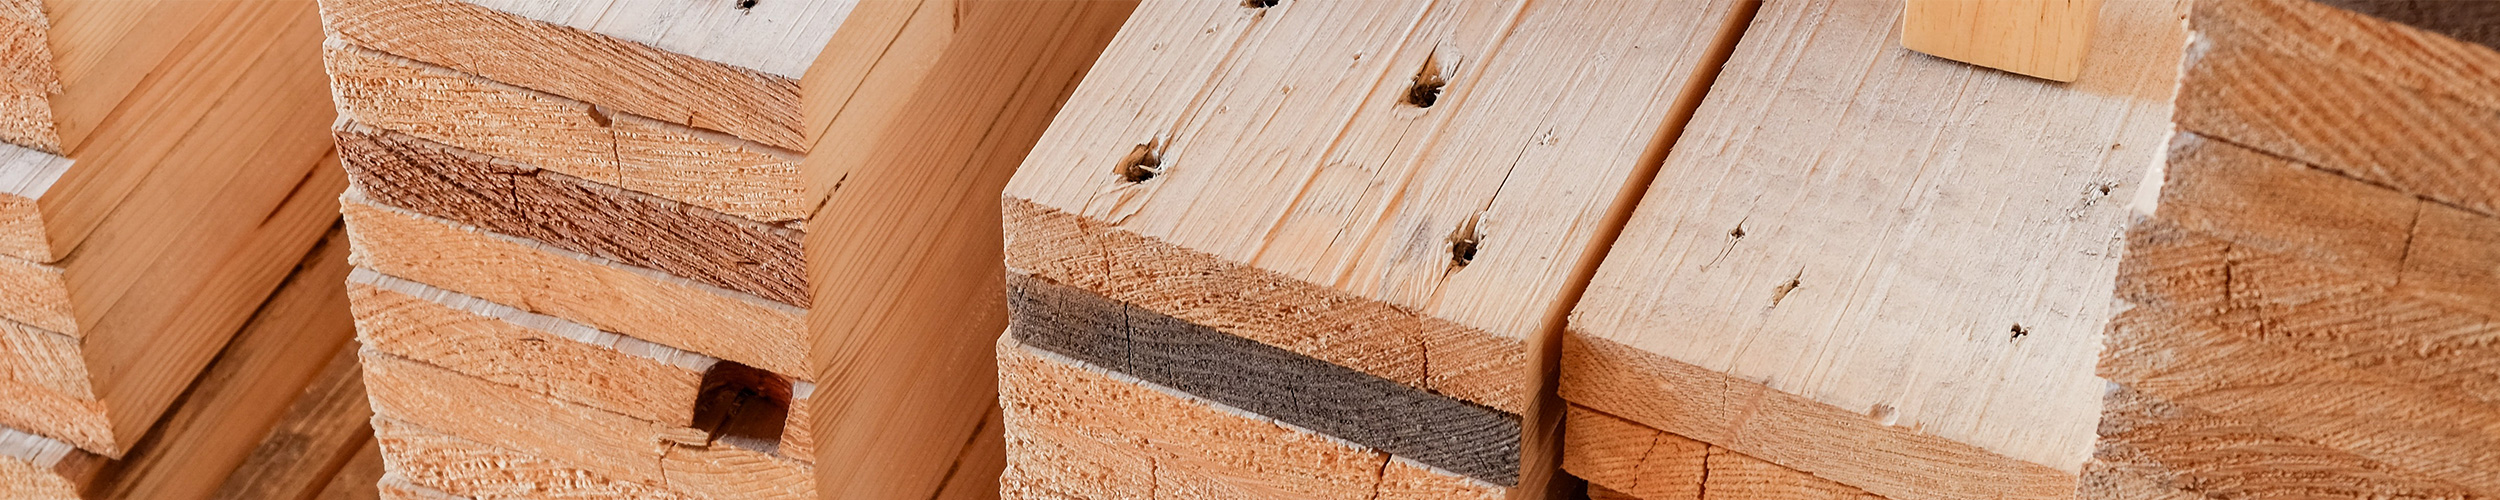 cabecera madera sin tratar web sulayr - Madera sin Tratar